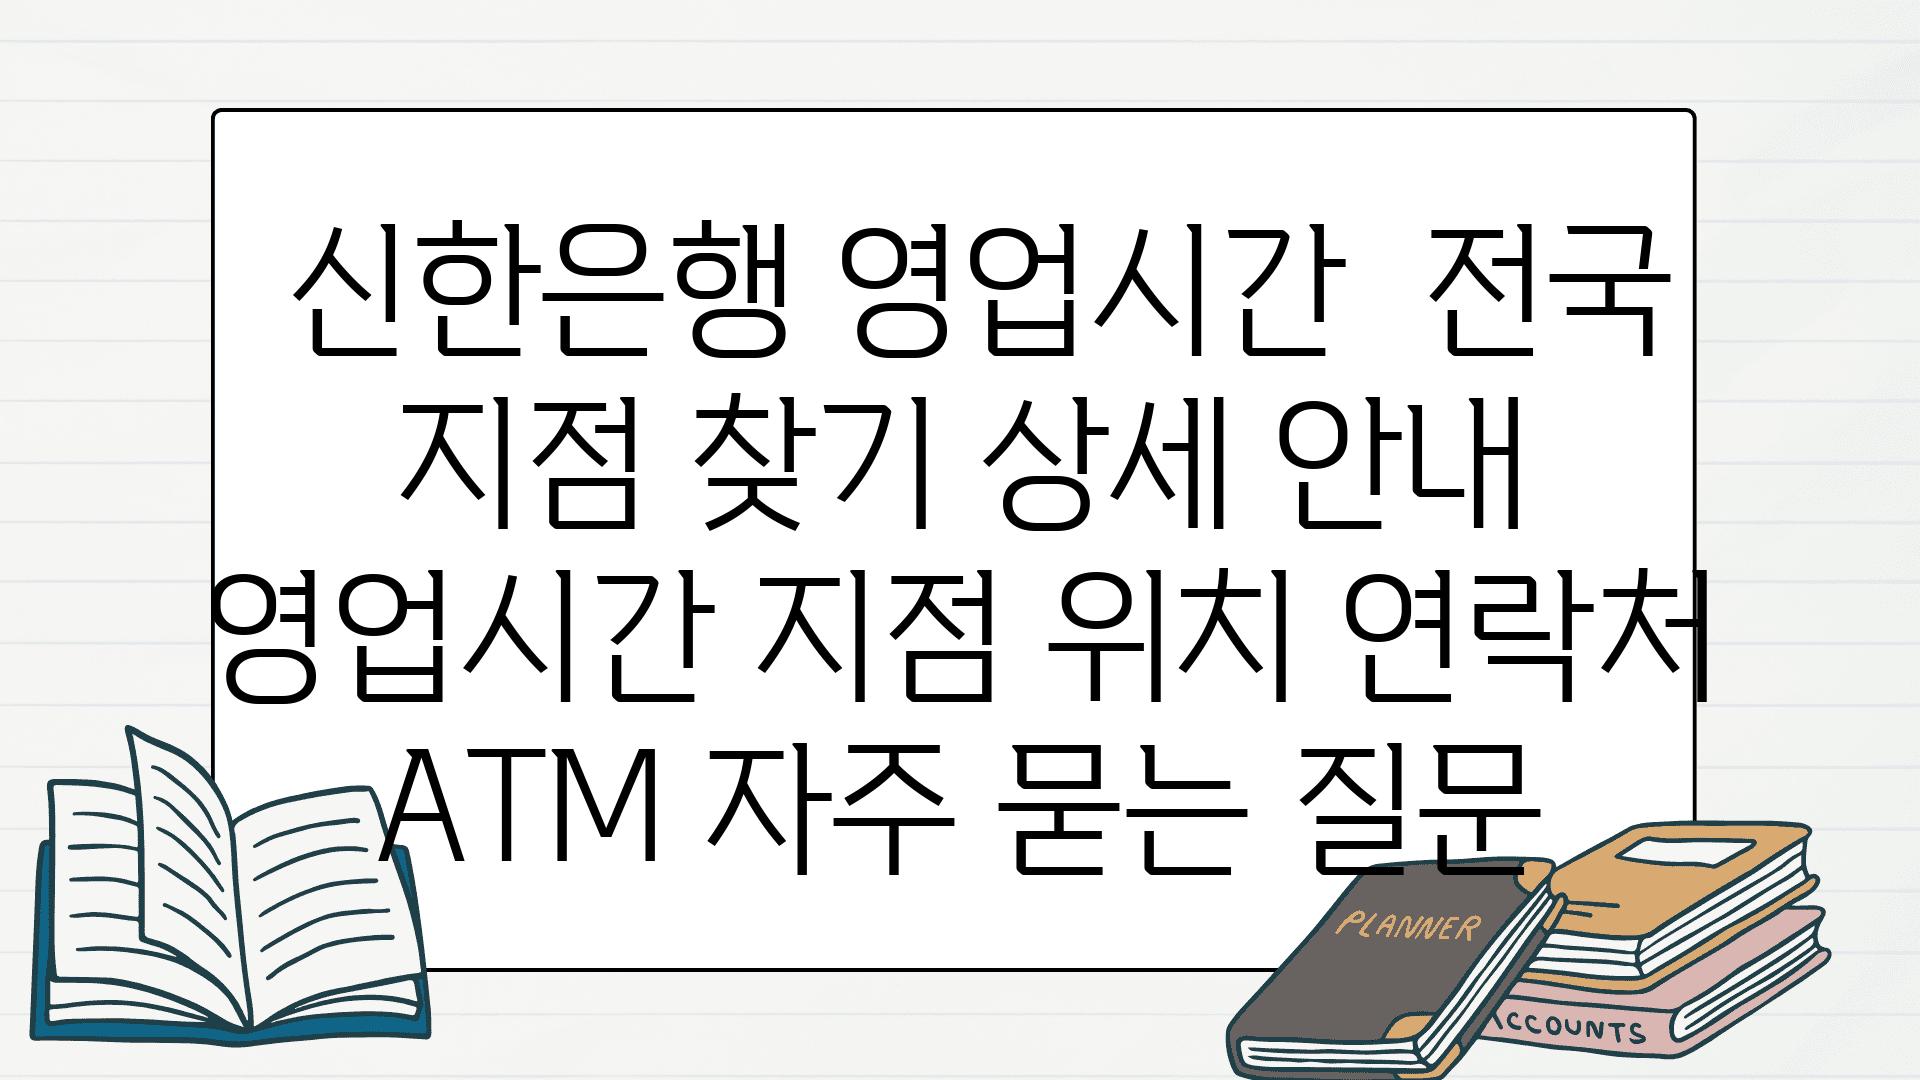  신한은행 영업시간  전국 지점 찾기 상세 공지  영업시간 지점 위치 연락처 ATM 자주 묻는 질문